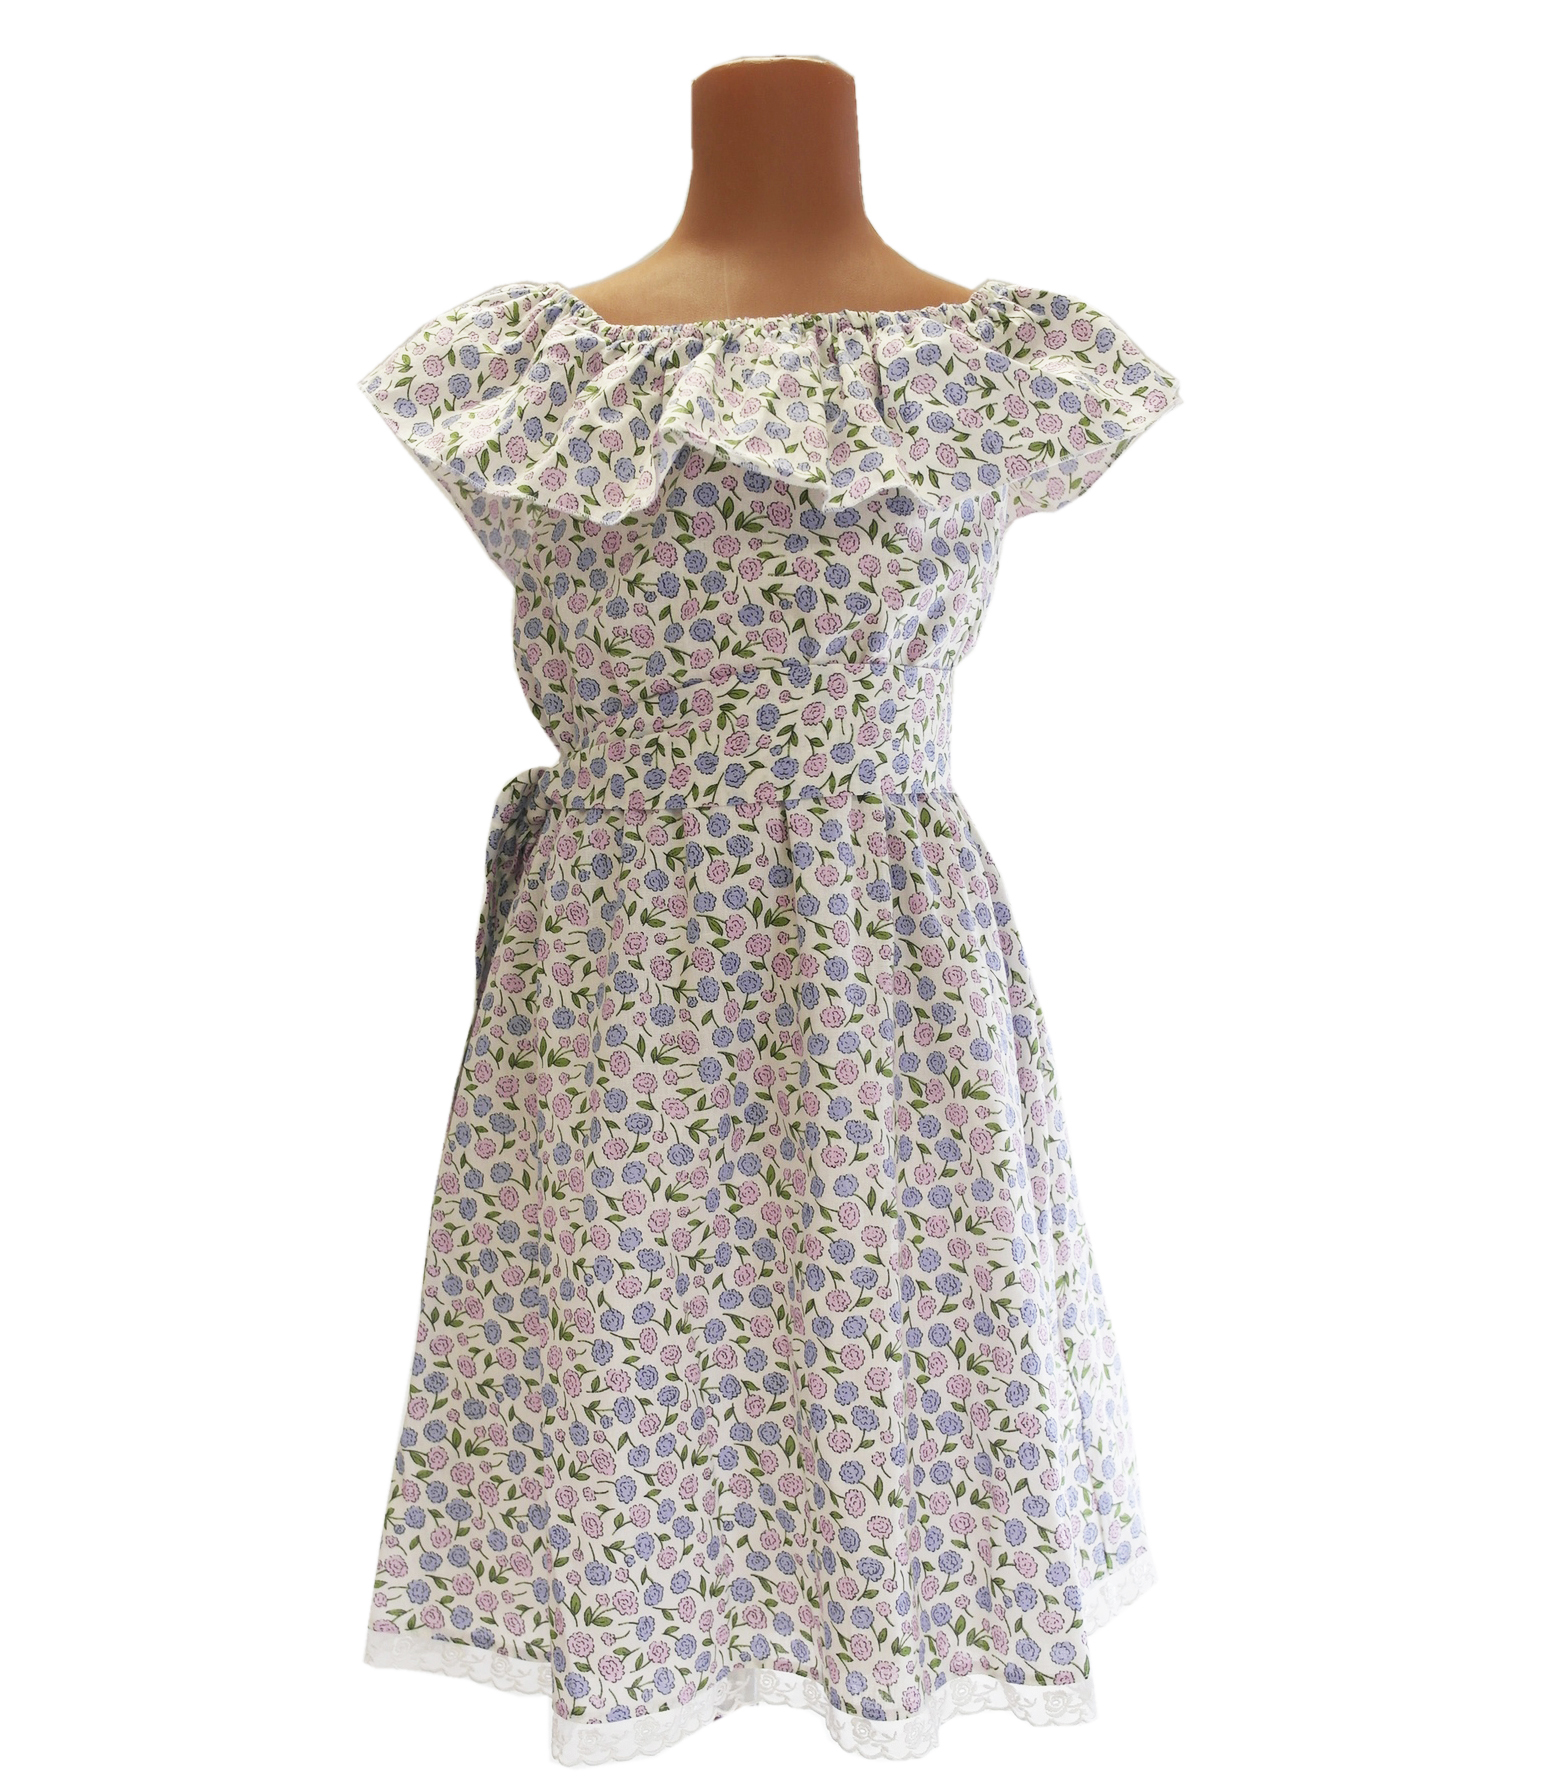 Фасон летнего платья из ситца с оборкой для женщин 50 лет